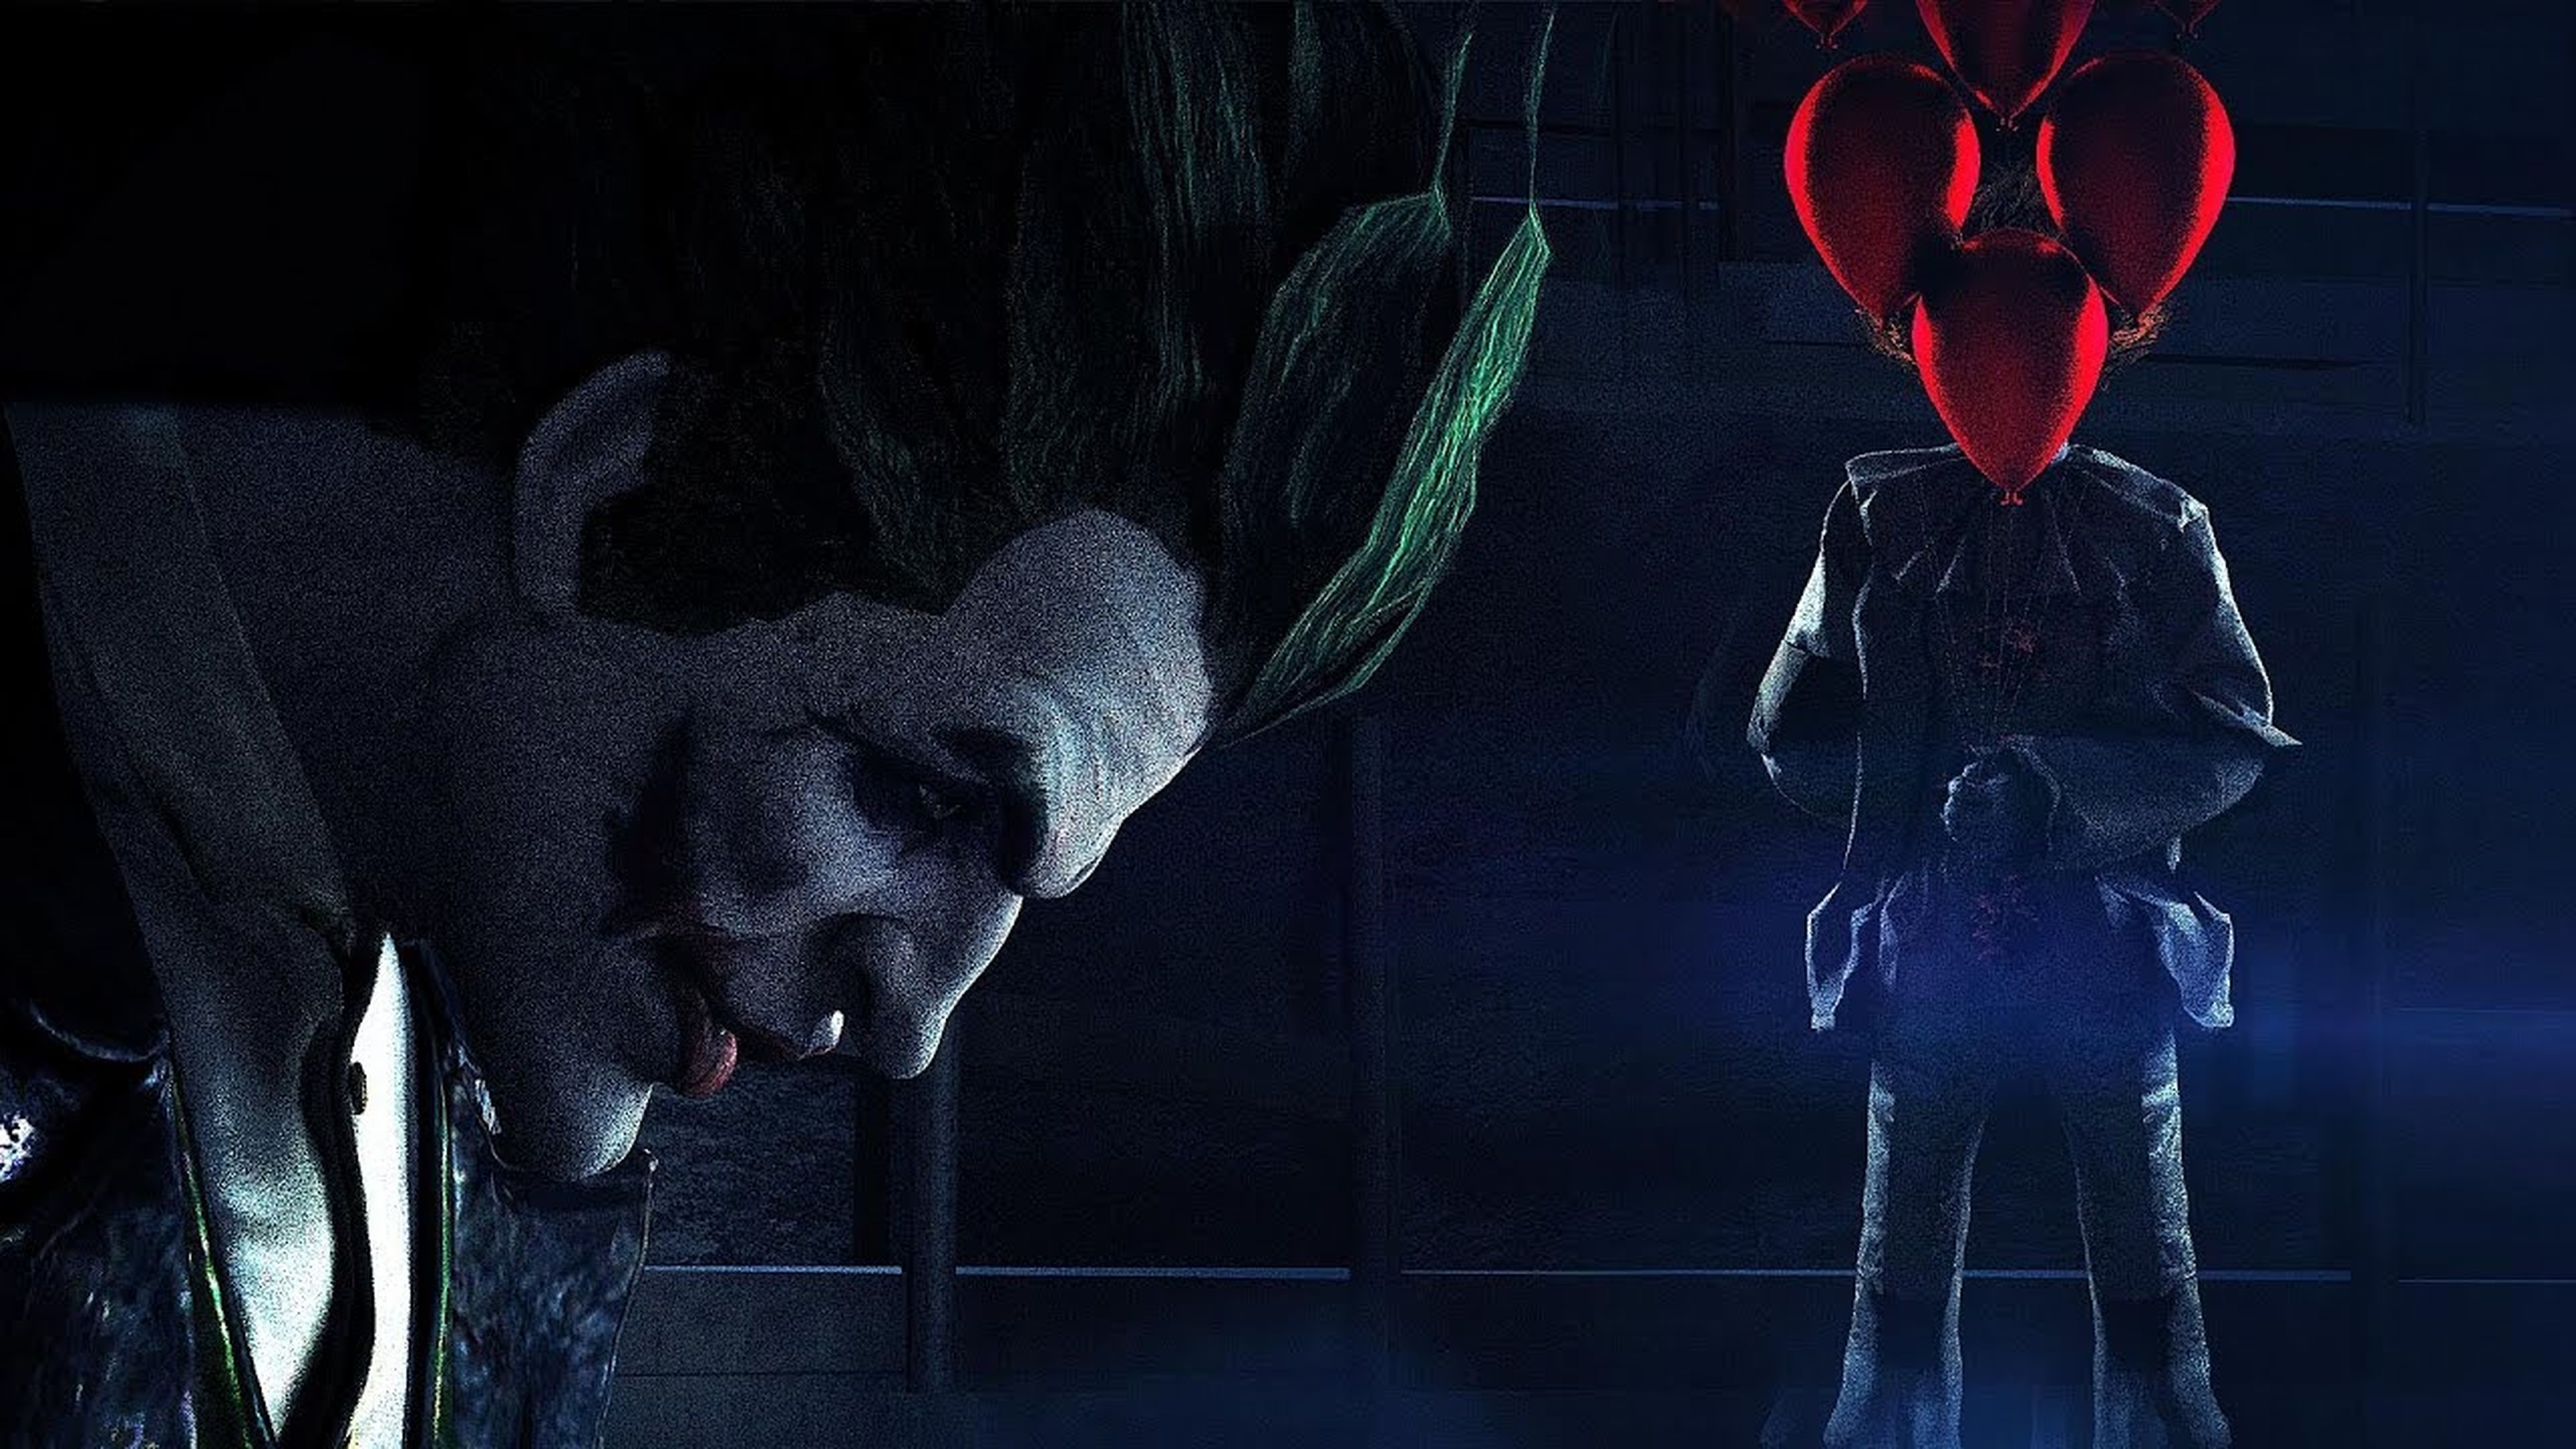 Pennywise vs Joker